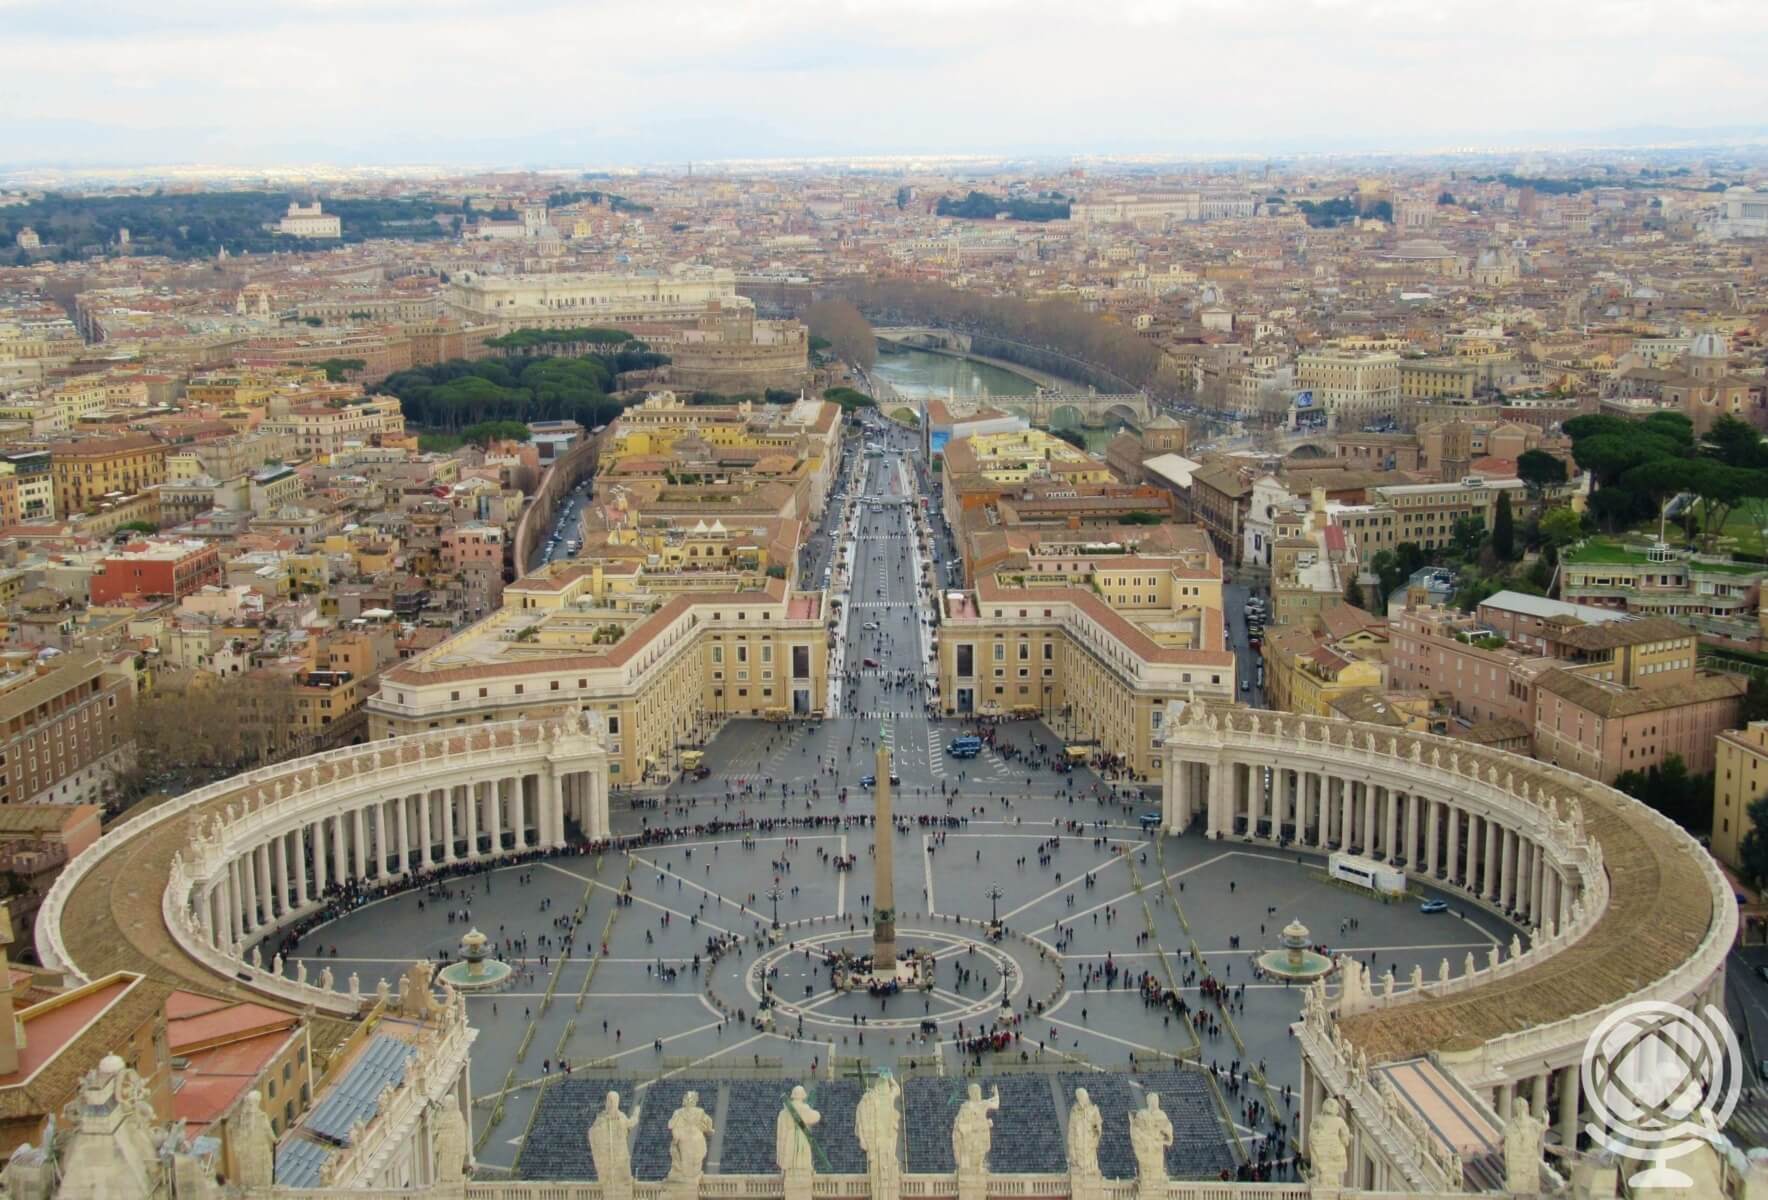 O que fazer no Vaticano - Pontos turísticos - Praça São Pedro vista do alto da cúpula da Basílica.